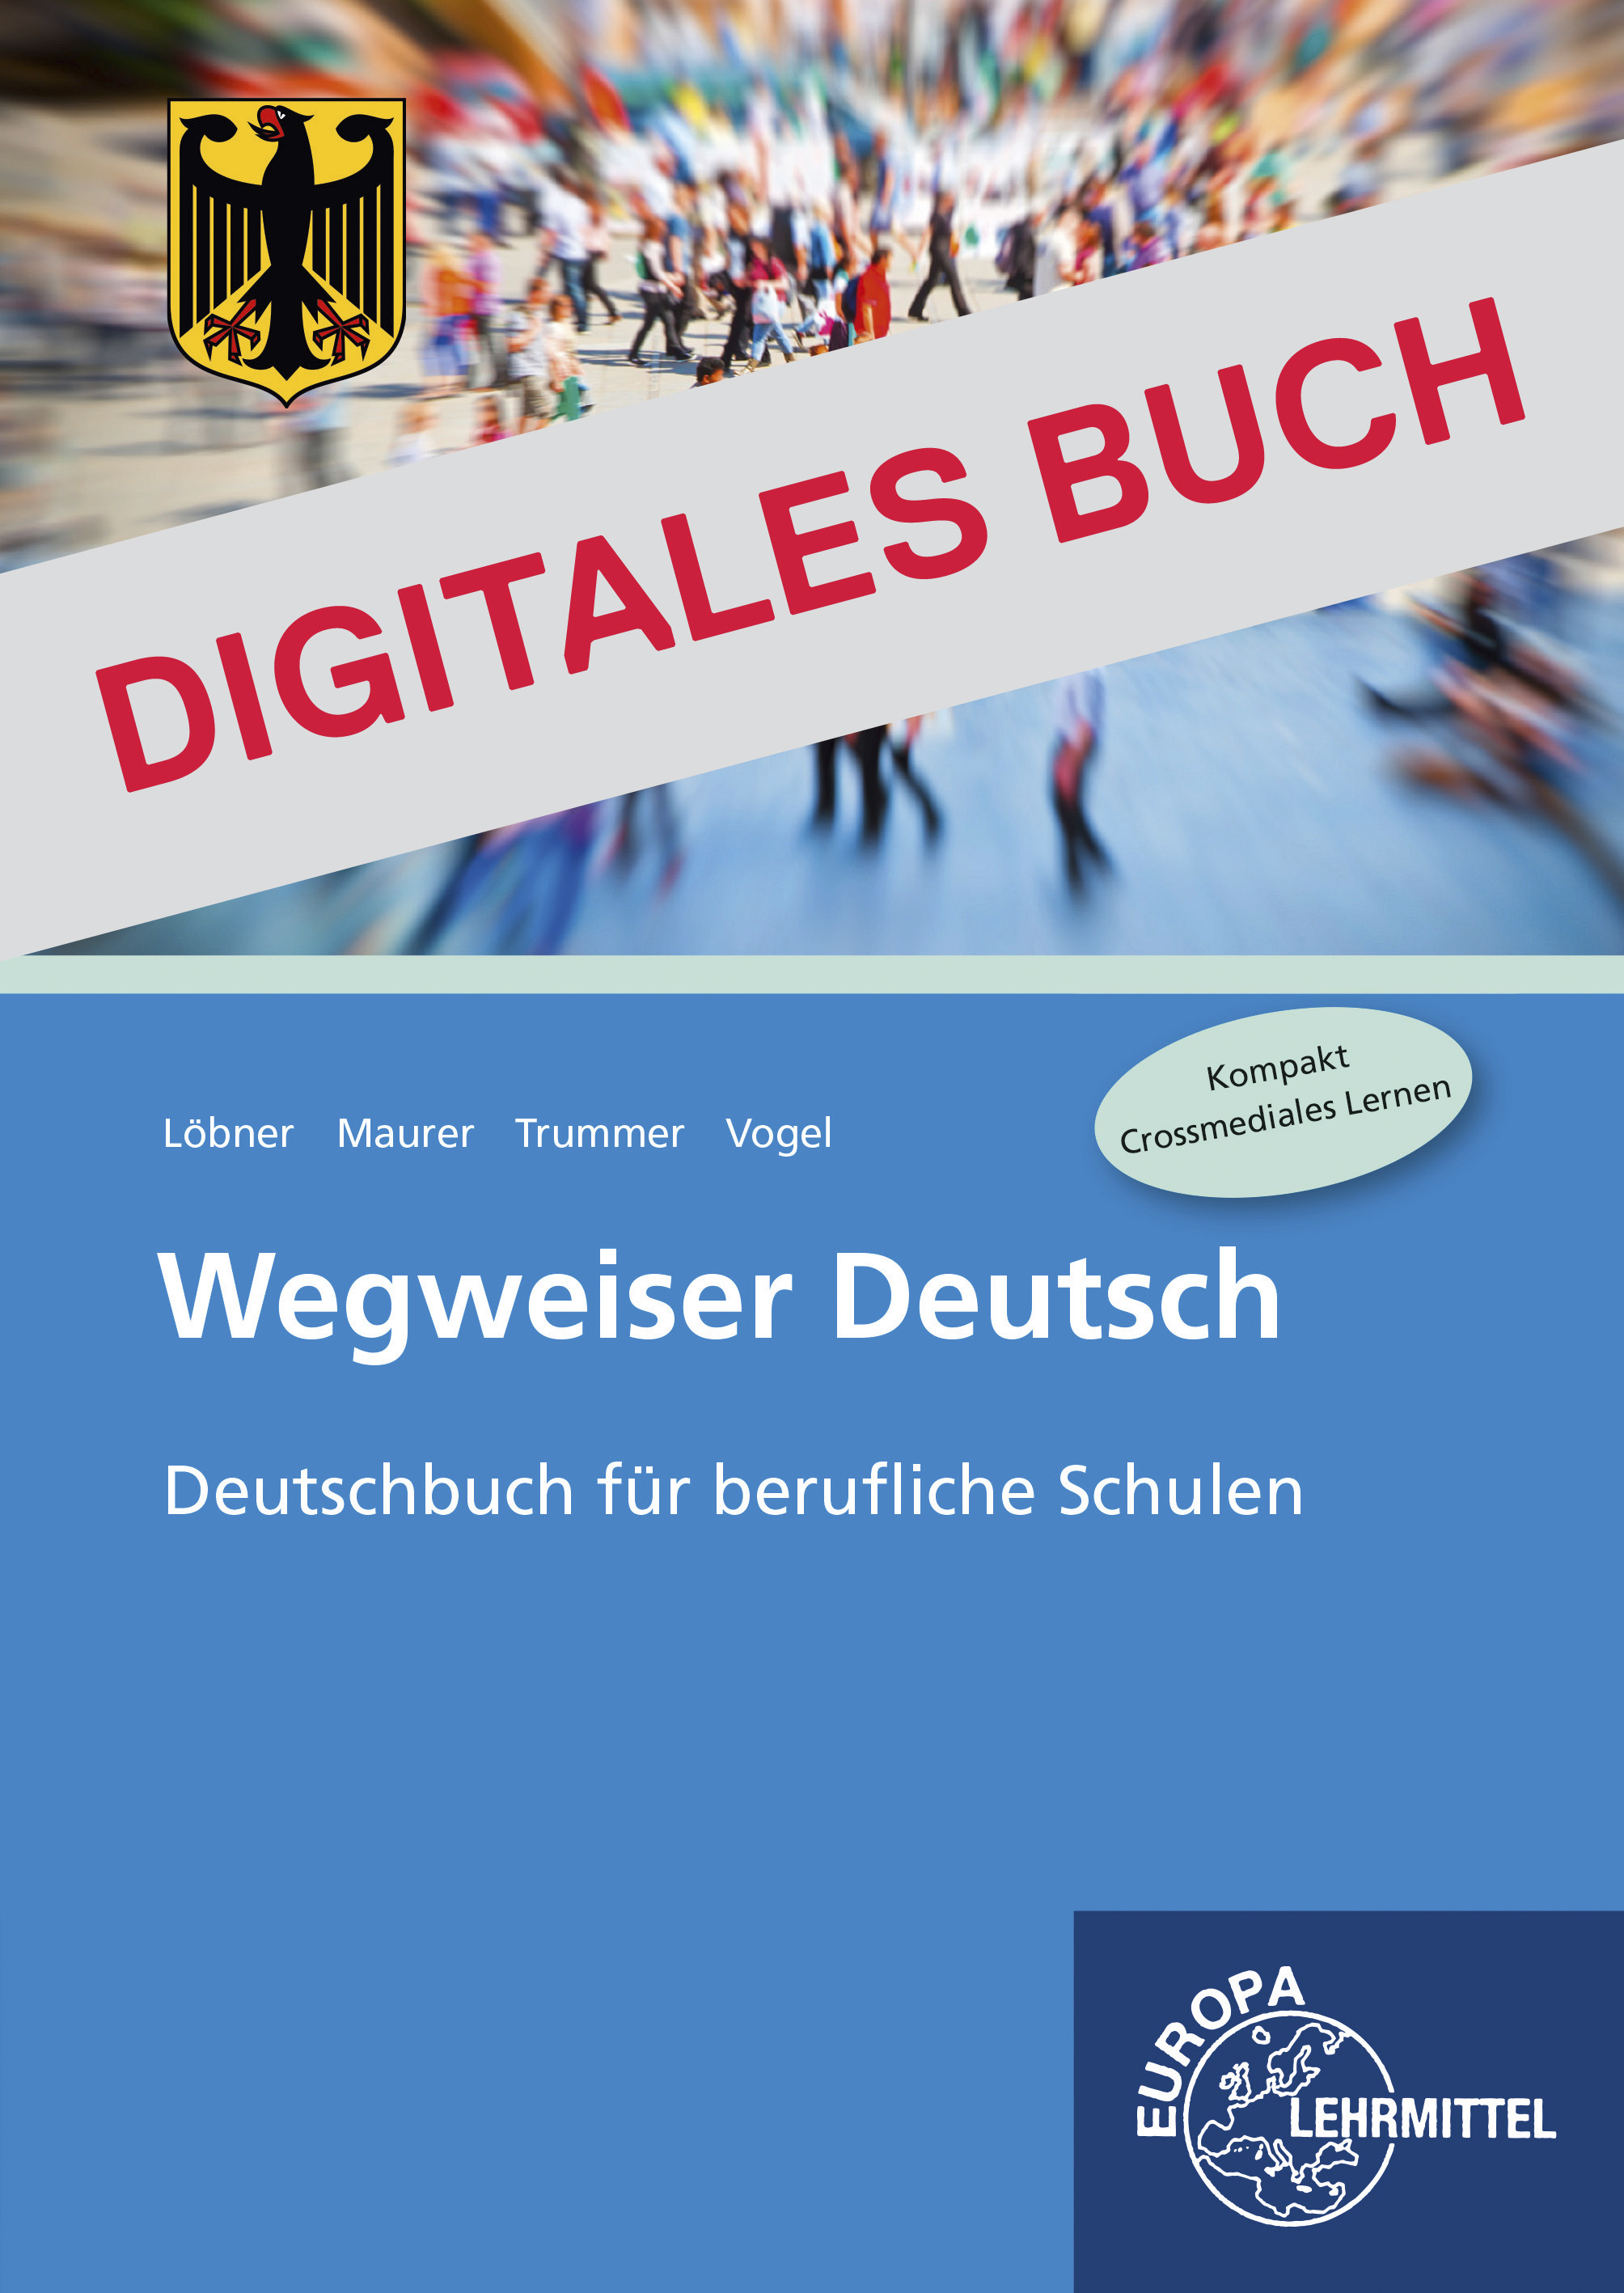 Wegweiser Deutsch - Bundesausgabe - Digitales Buch